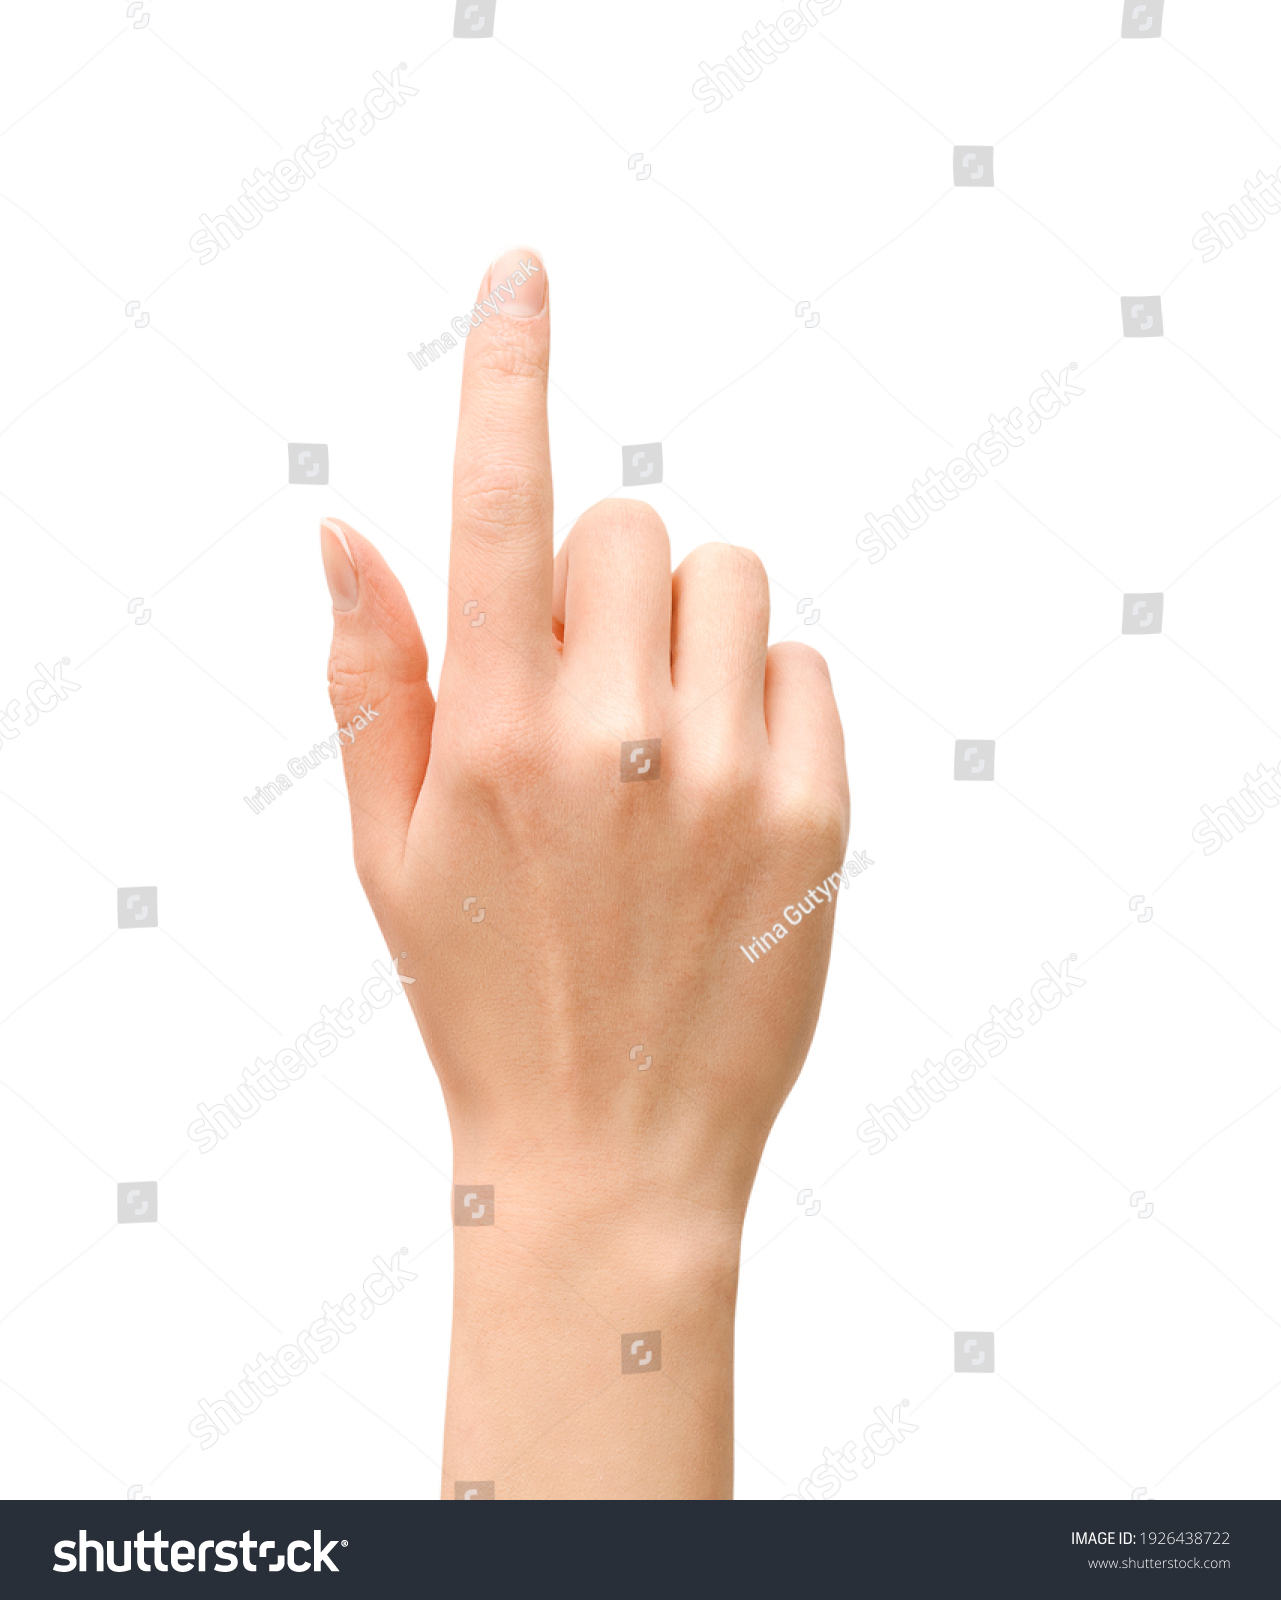 female hand pointing upwards on isolated white background #1926438722